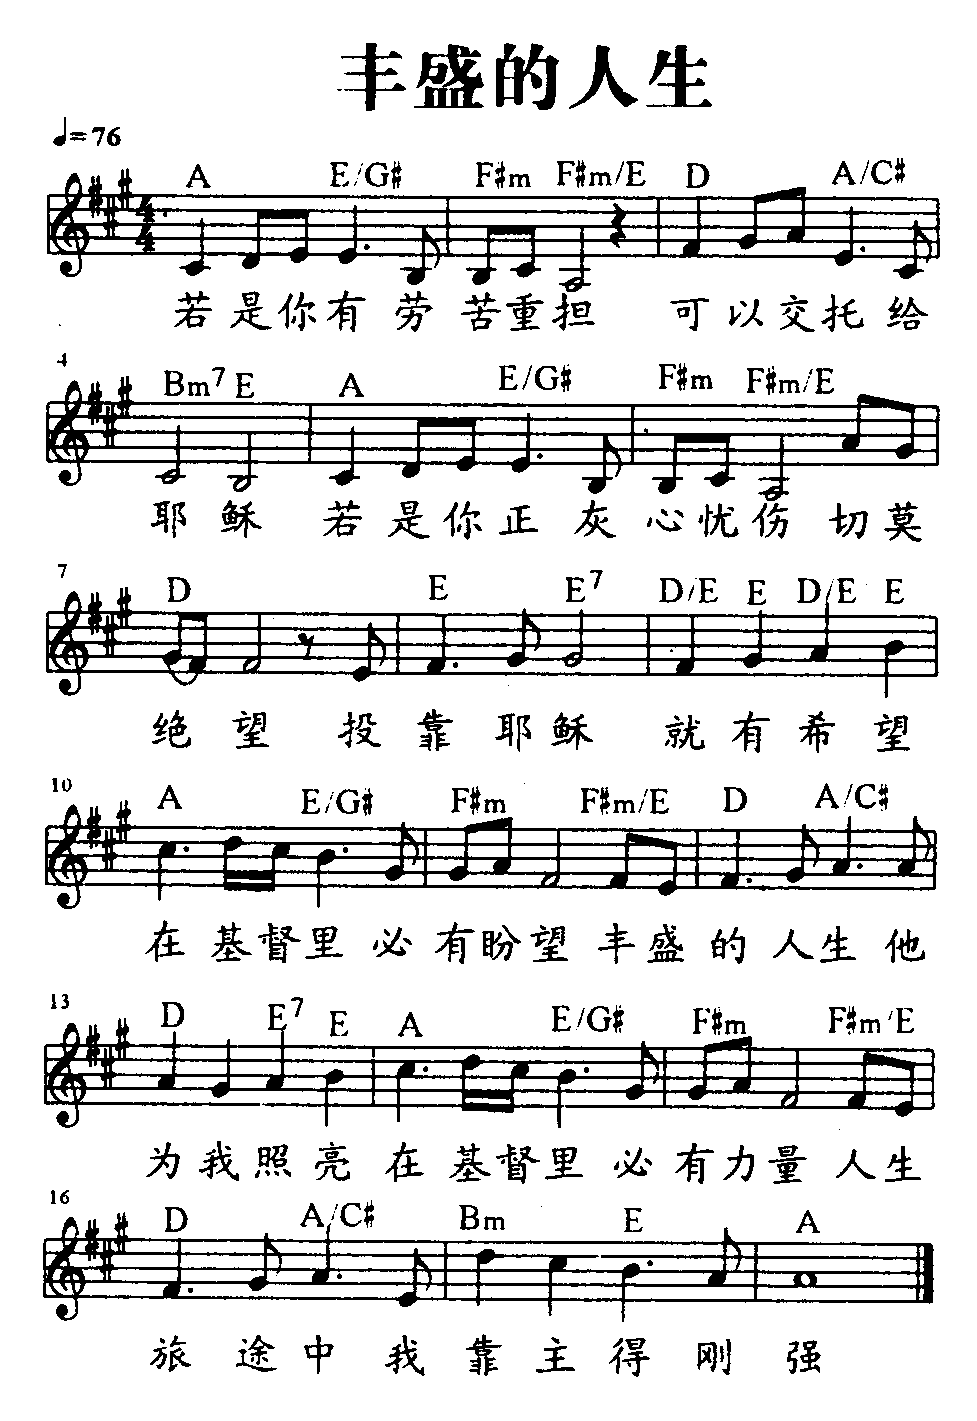 中国乐谱网——【吉他谱】丰盛的人生